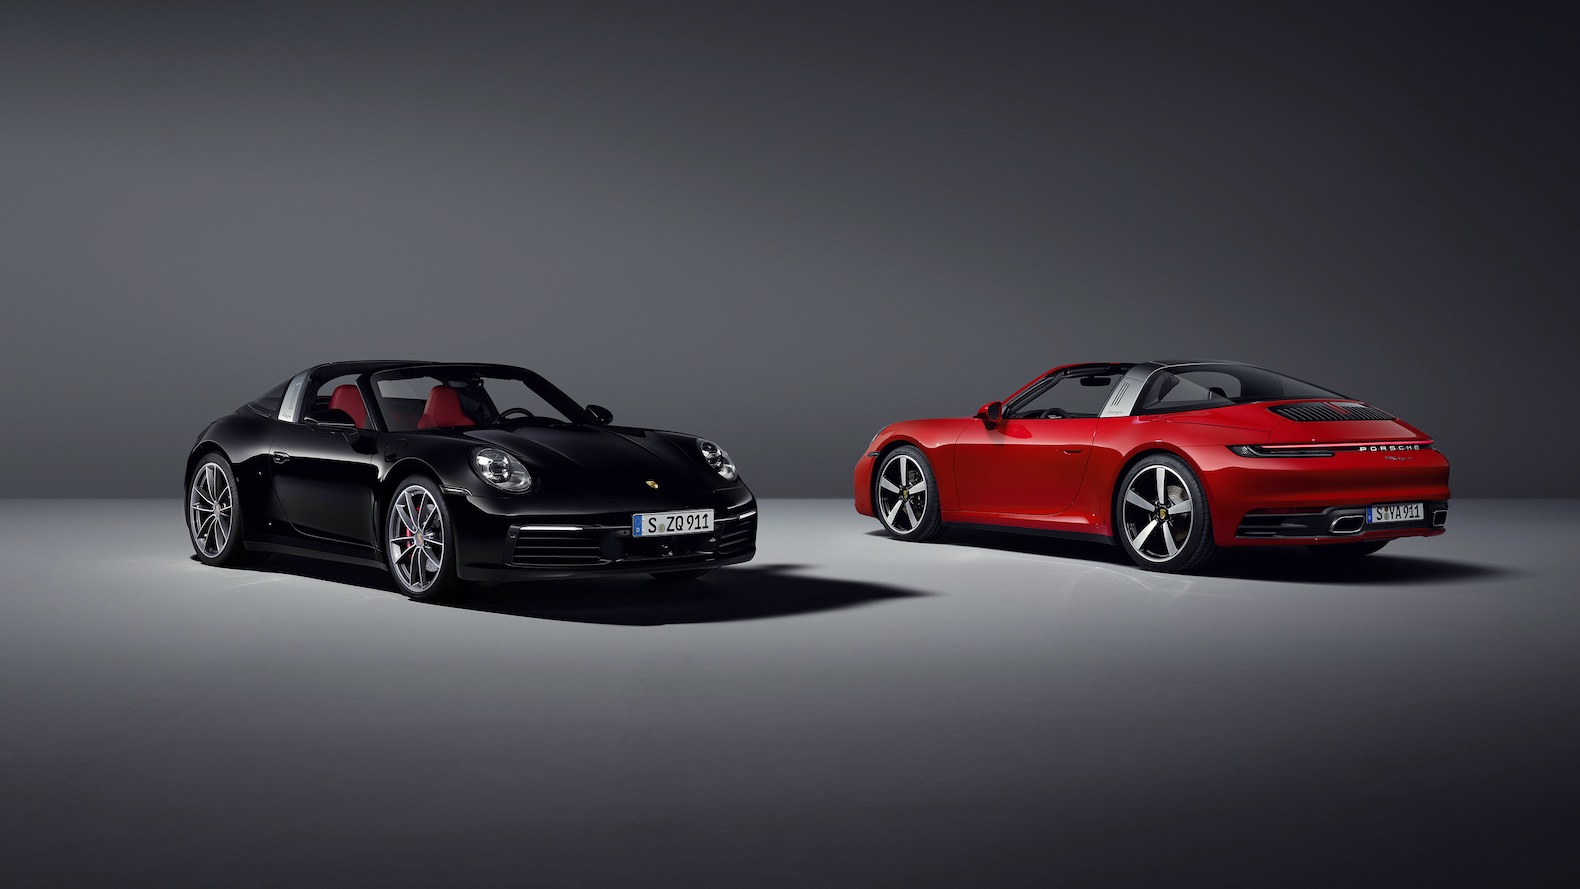 สปอร์ตย้อนยุค! Porsche 911 2021 เผยโฉม 2 รุ่น หลังคาเปิดปิดภายใน 19 วินาที